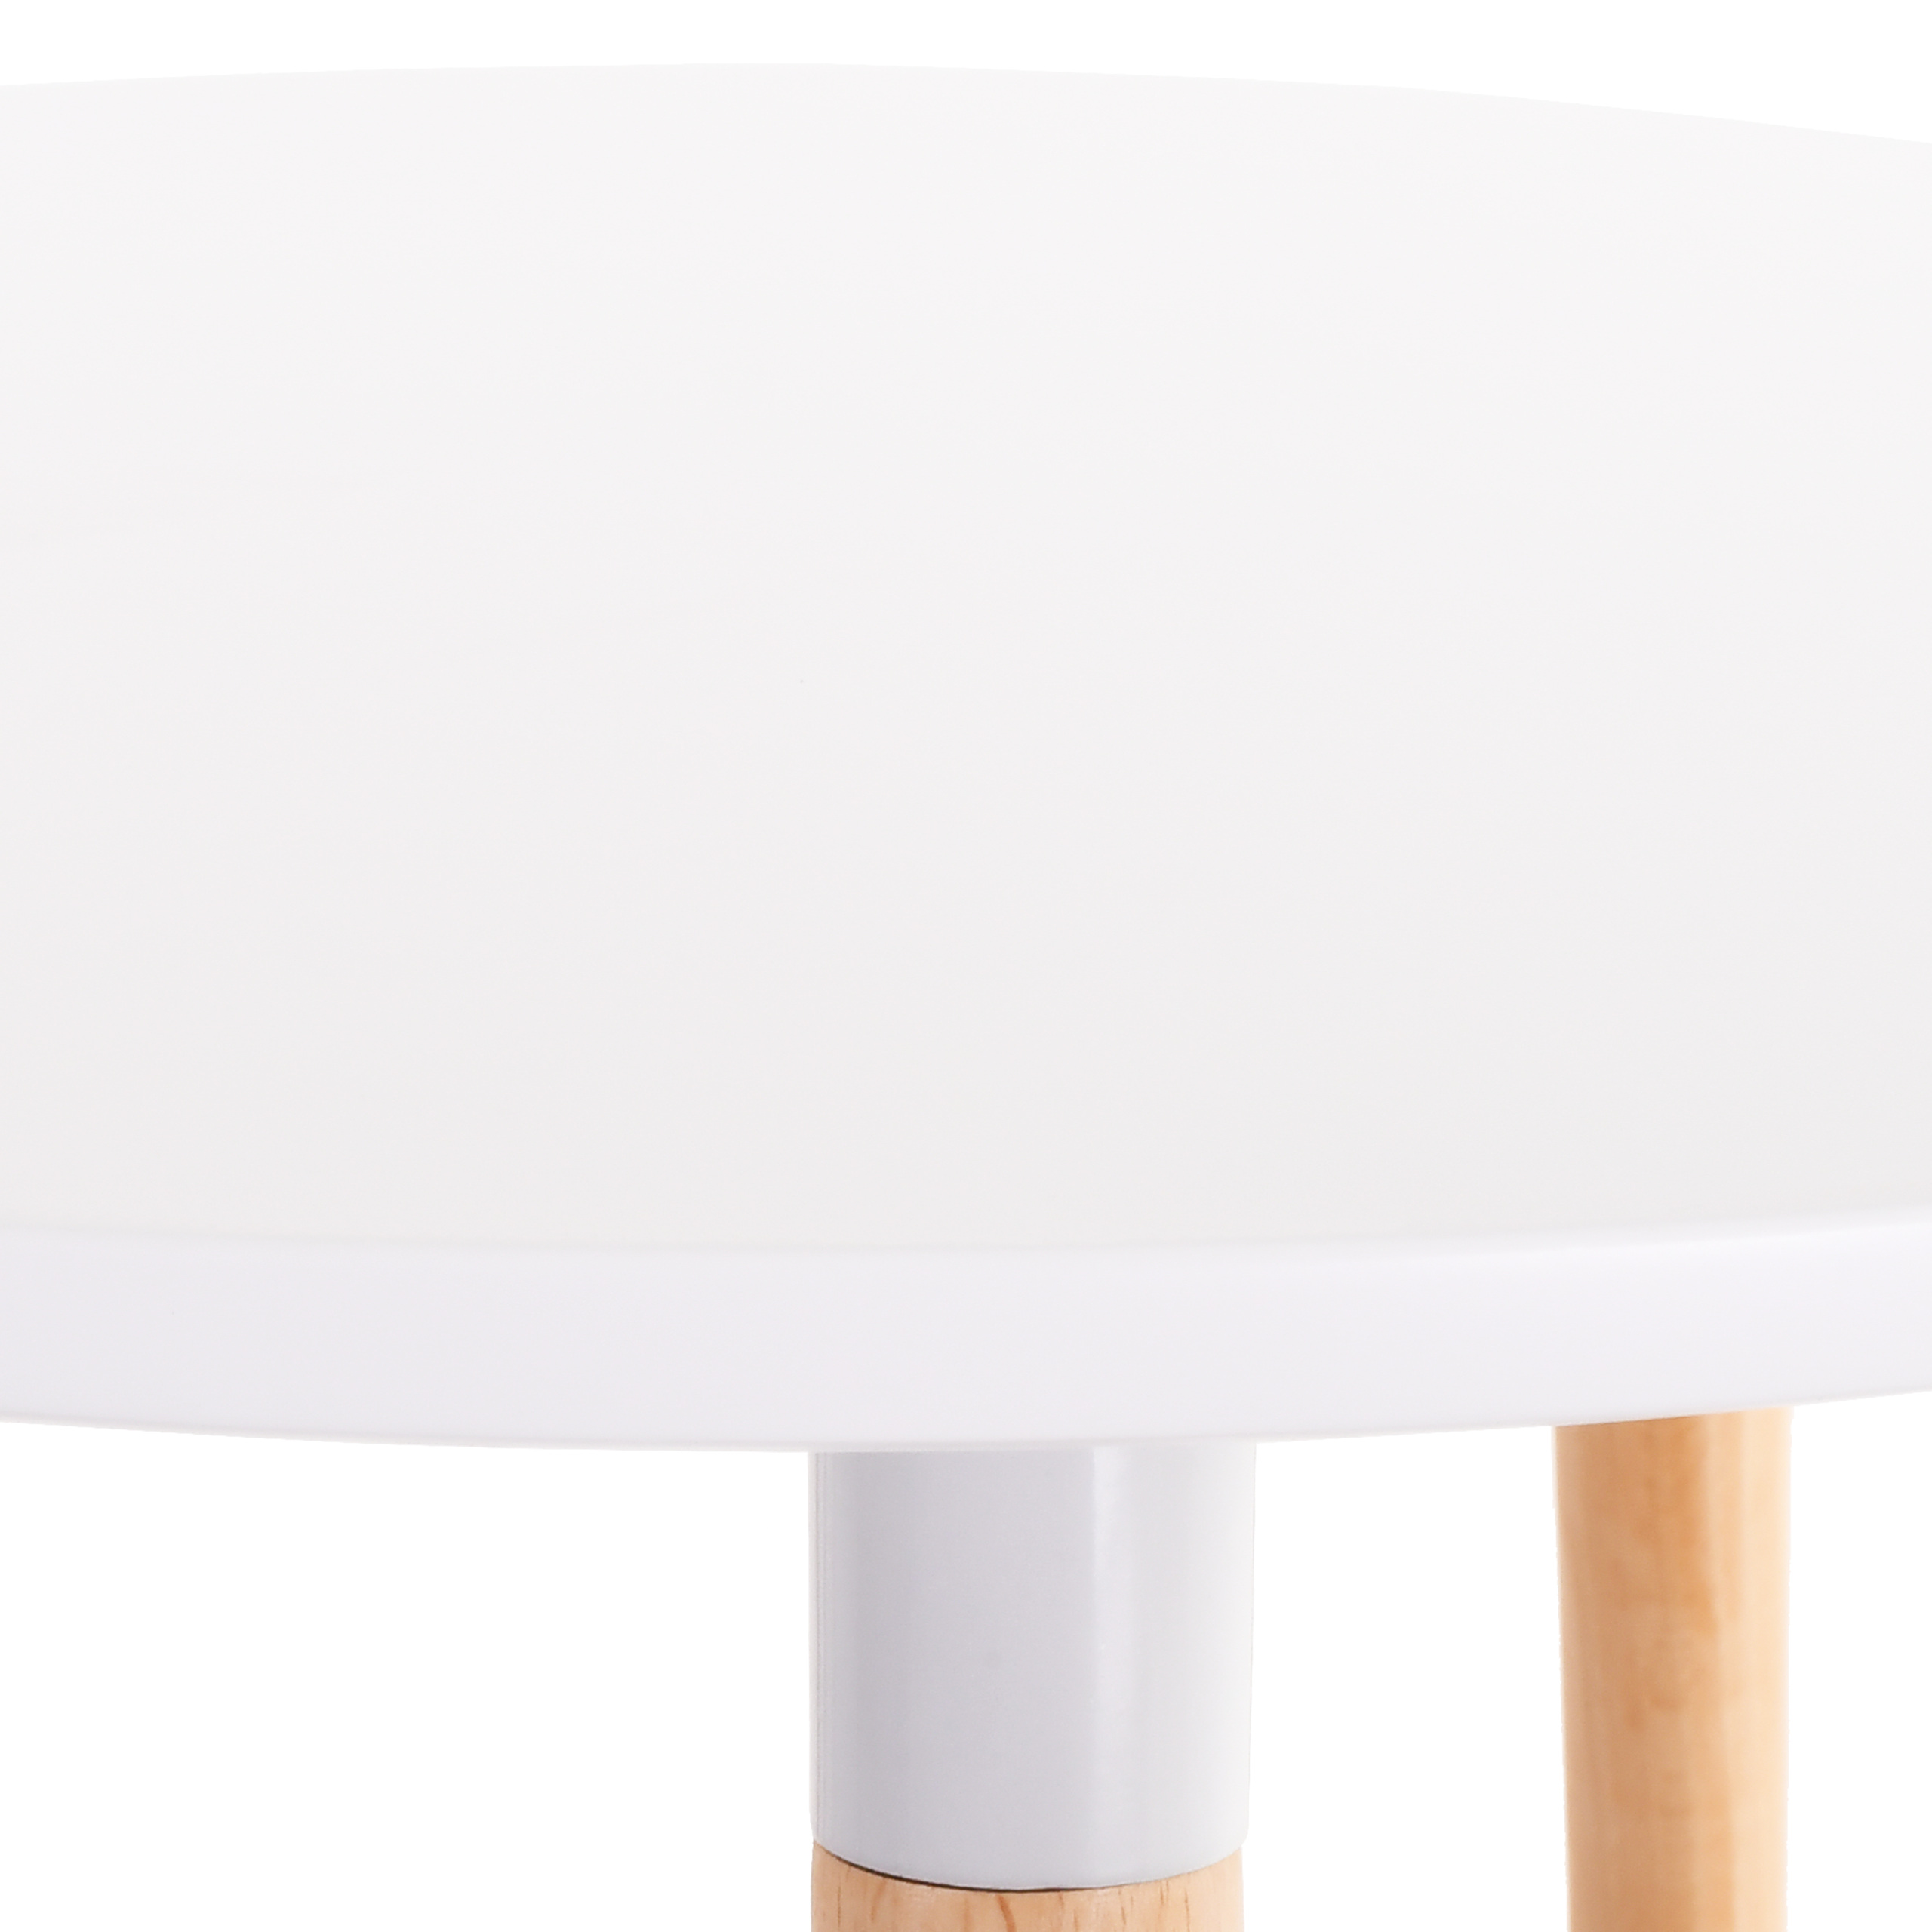 Raburg Tisch Smilla groß, Seiden-Weiß, 74 cm hoch, 80 cm Durchmesser, Beine Buche